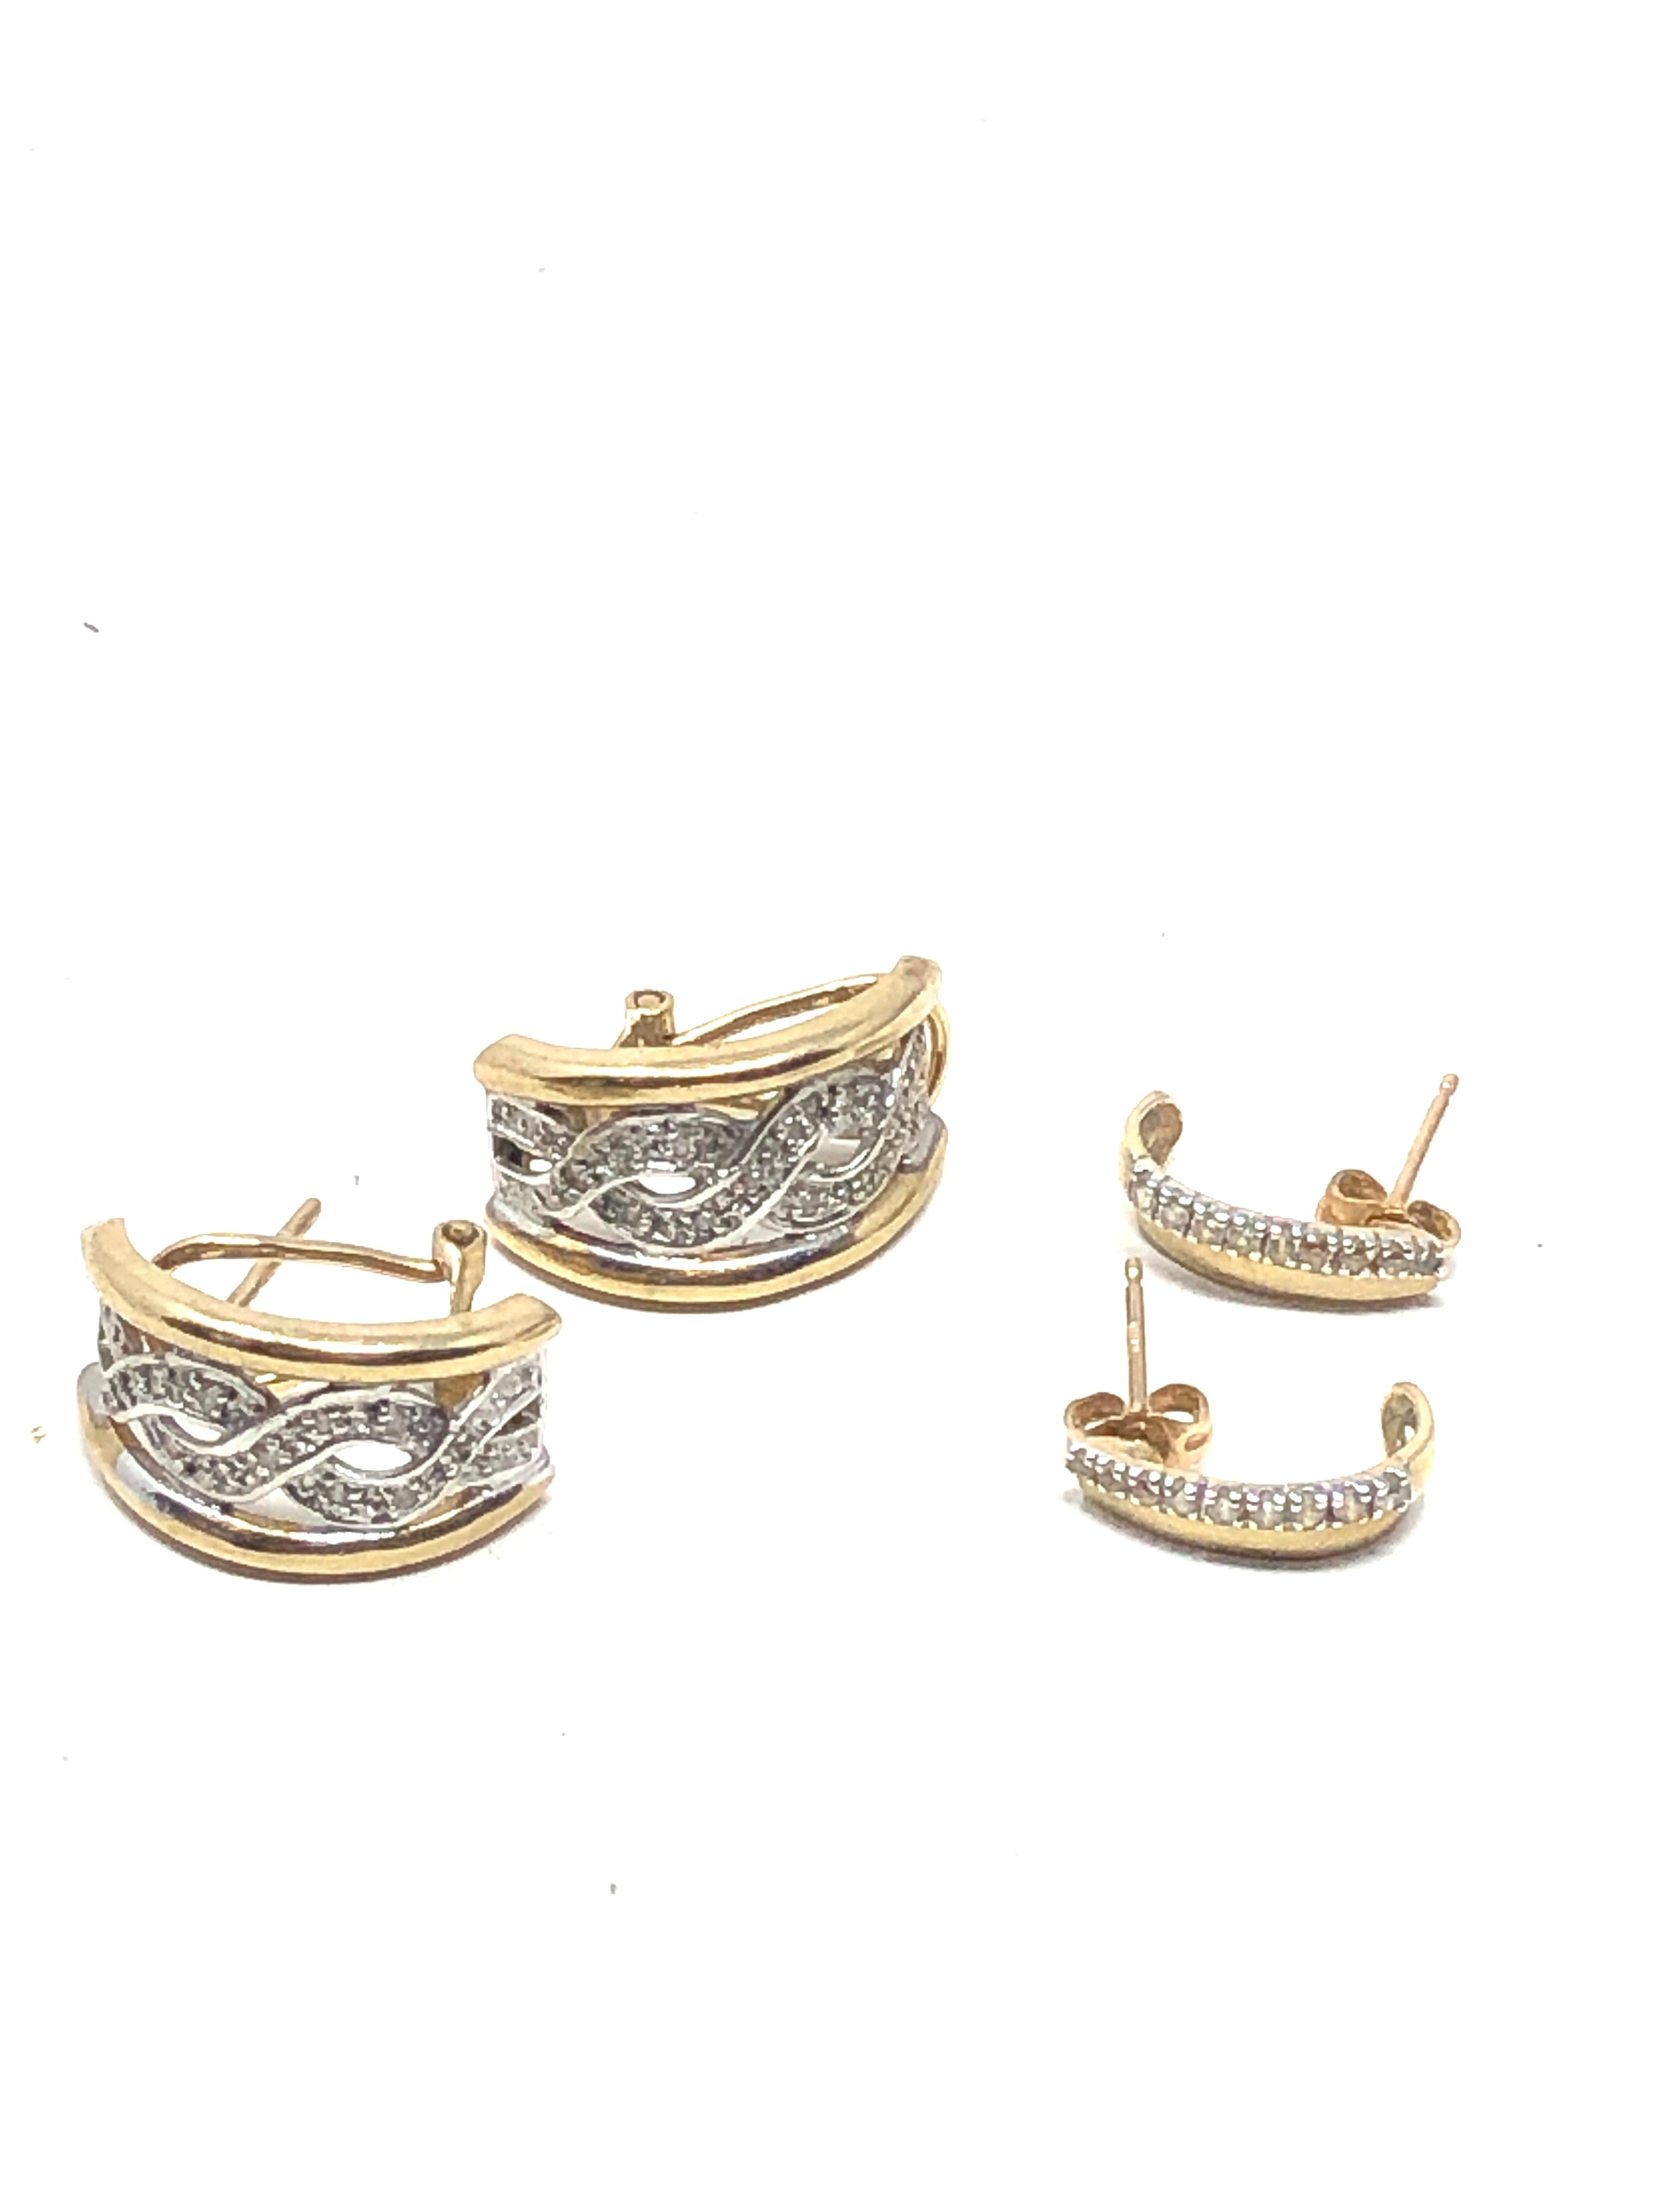 2 x 9ct gold diamond set half-hoop earrings (4.7g)